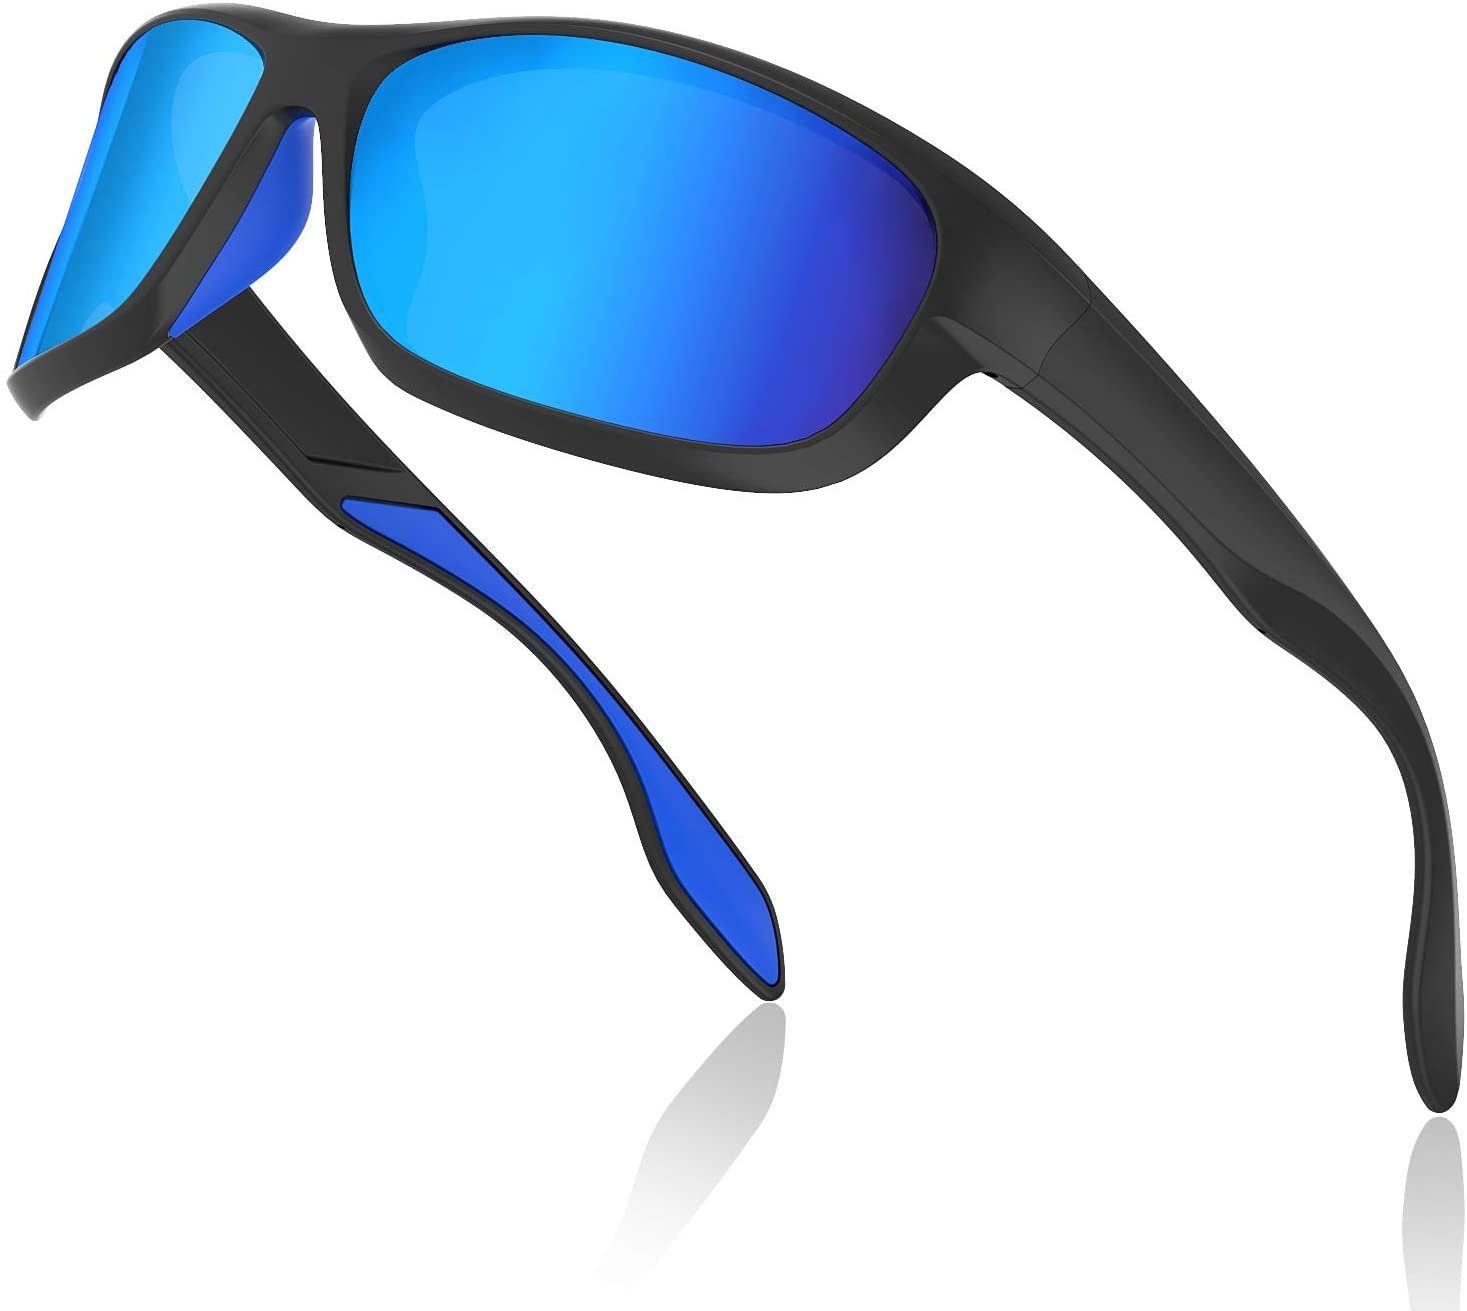 Fahrradbrille (Uv400-schutz, Winddicht blau), Radsportbrille, Elegear Blendung-schutz